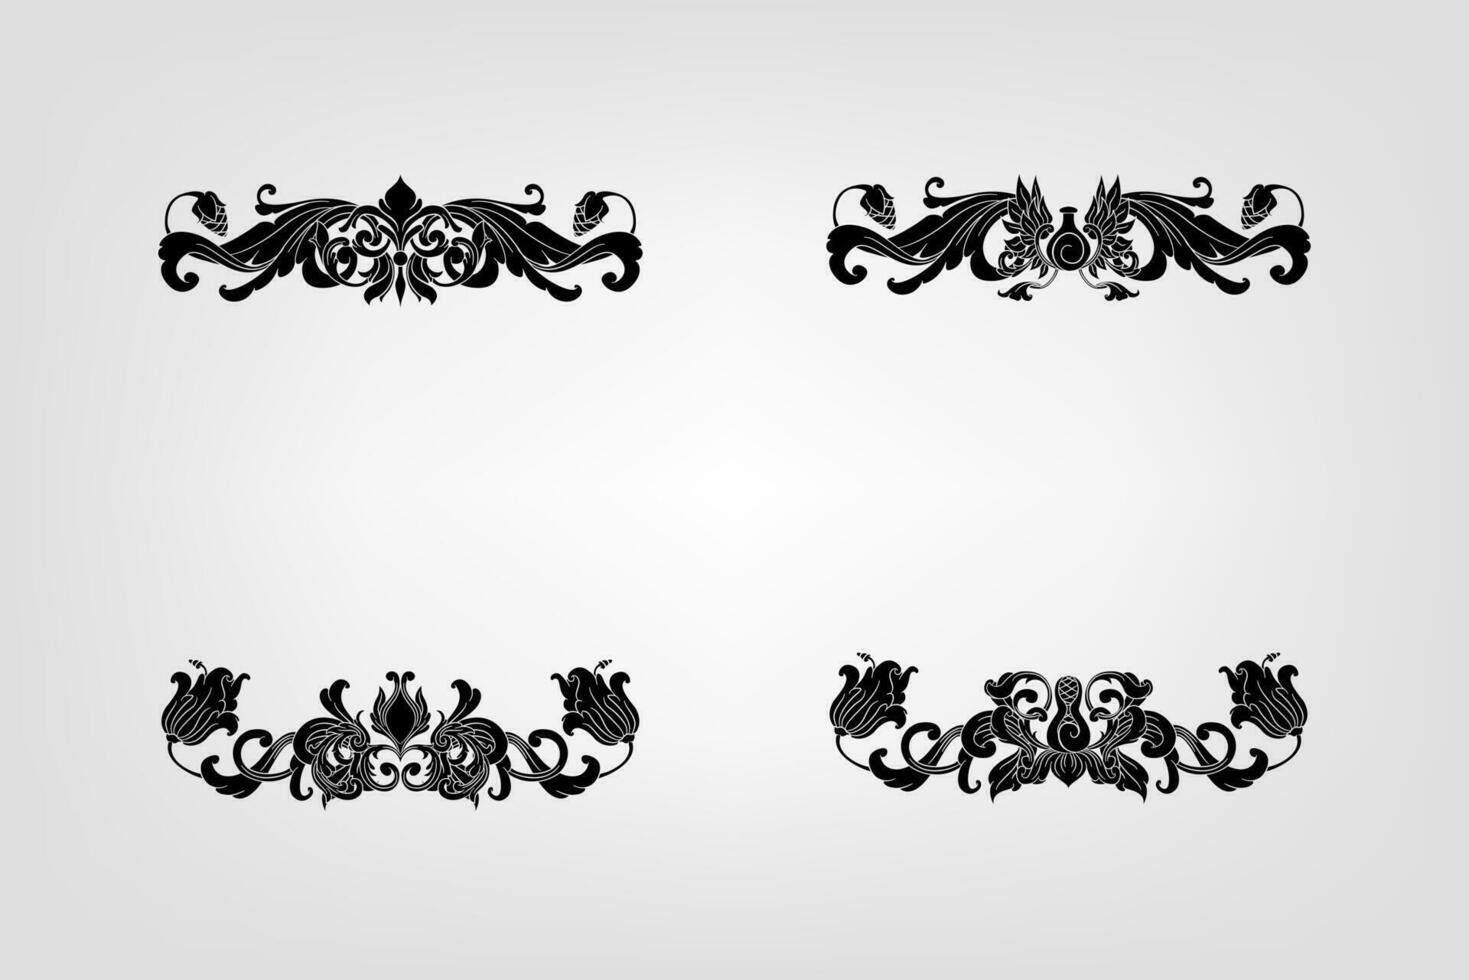 clásico barroco filigrana decoración ornamento Clásico floral frontera estilo antiguo Arte retro vector